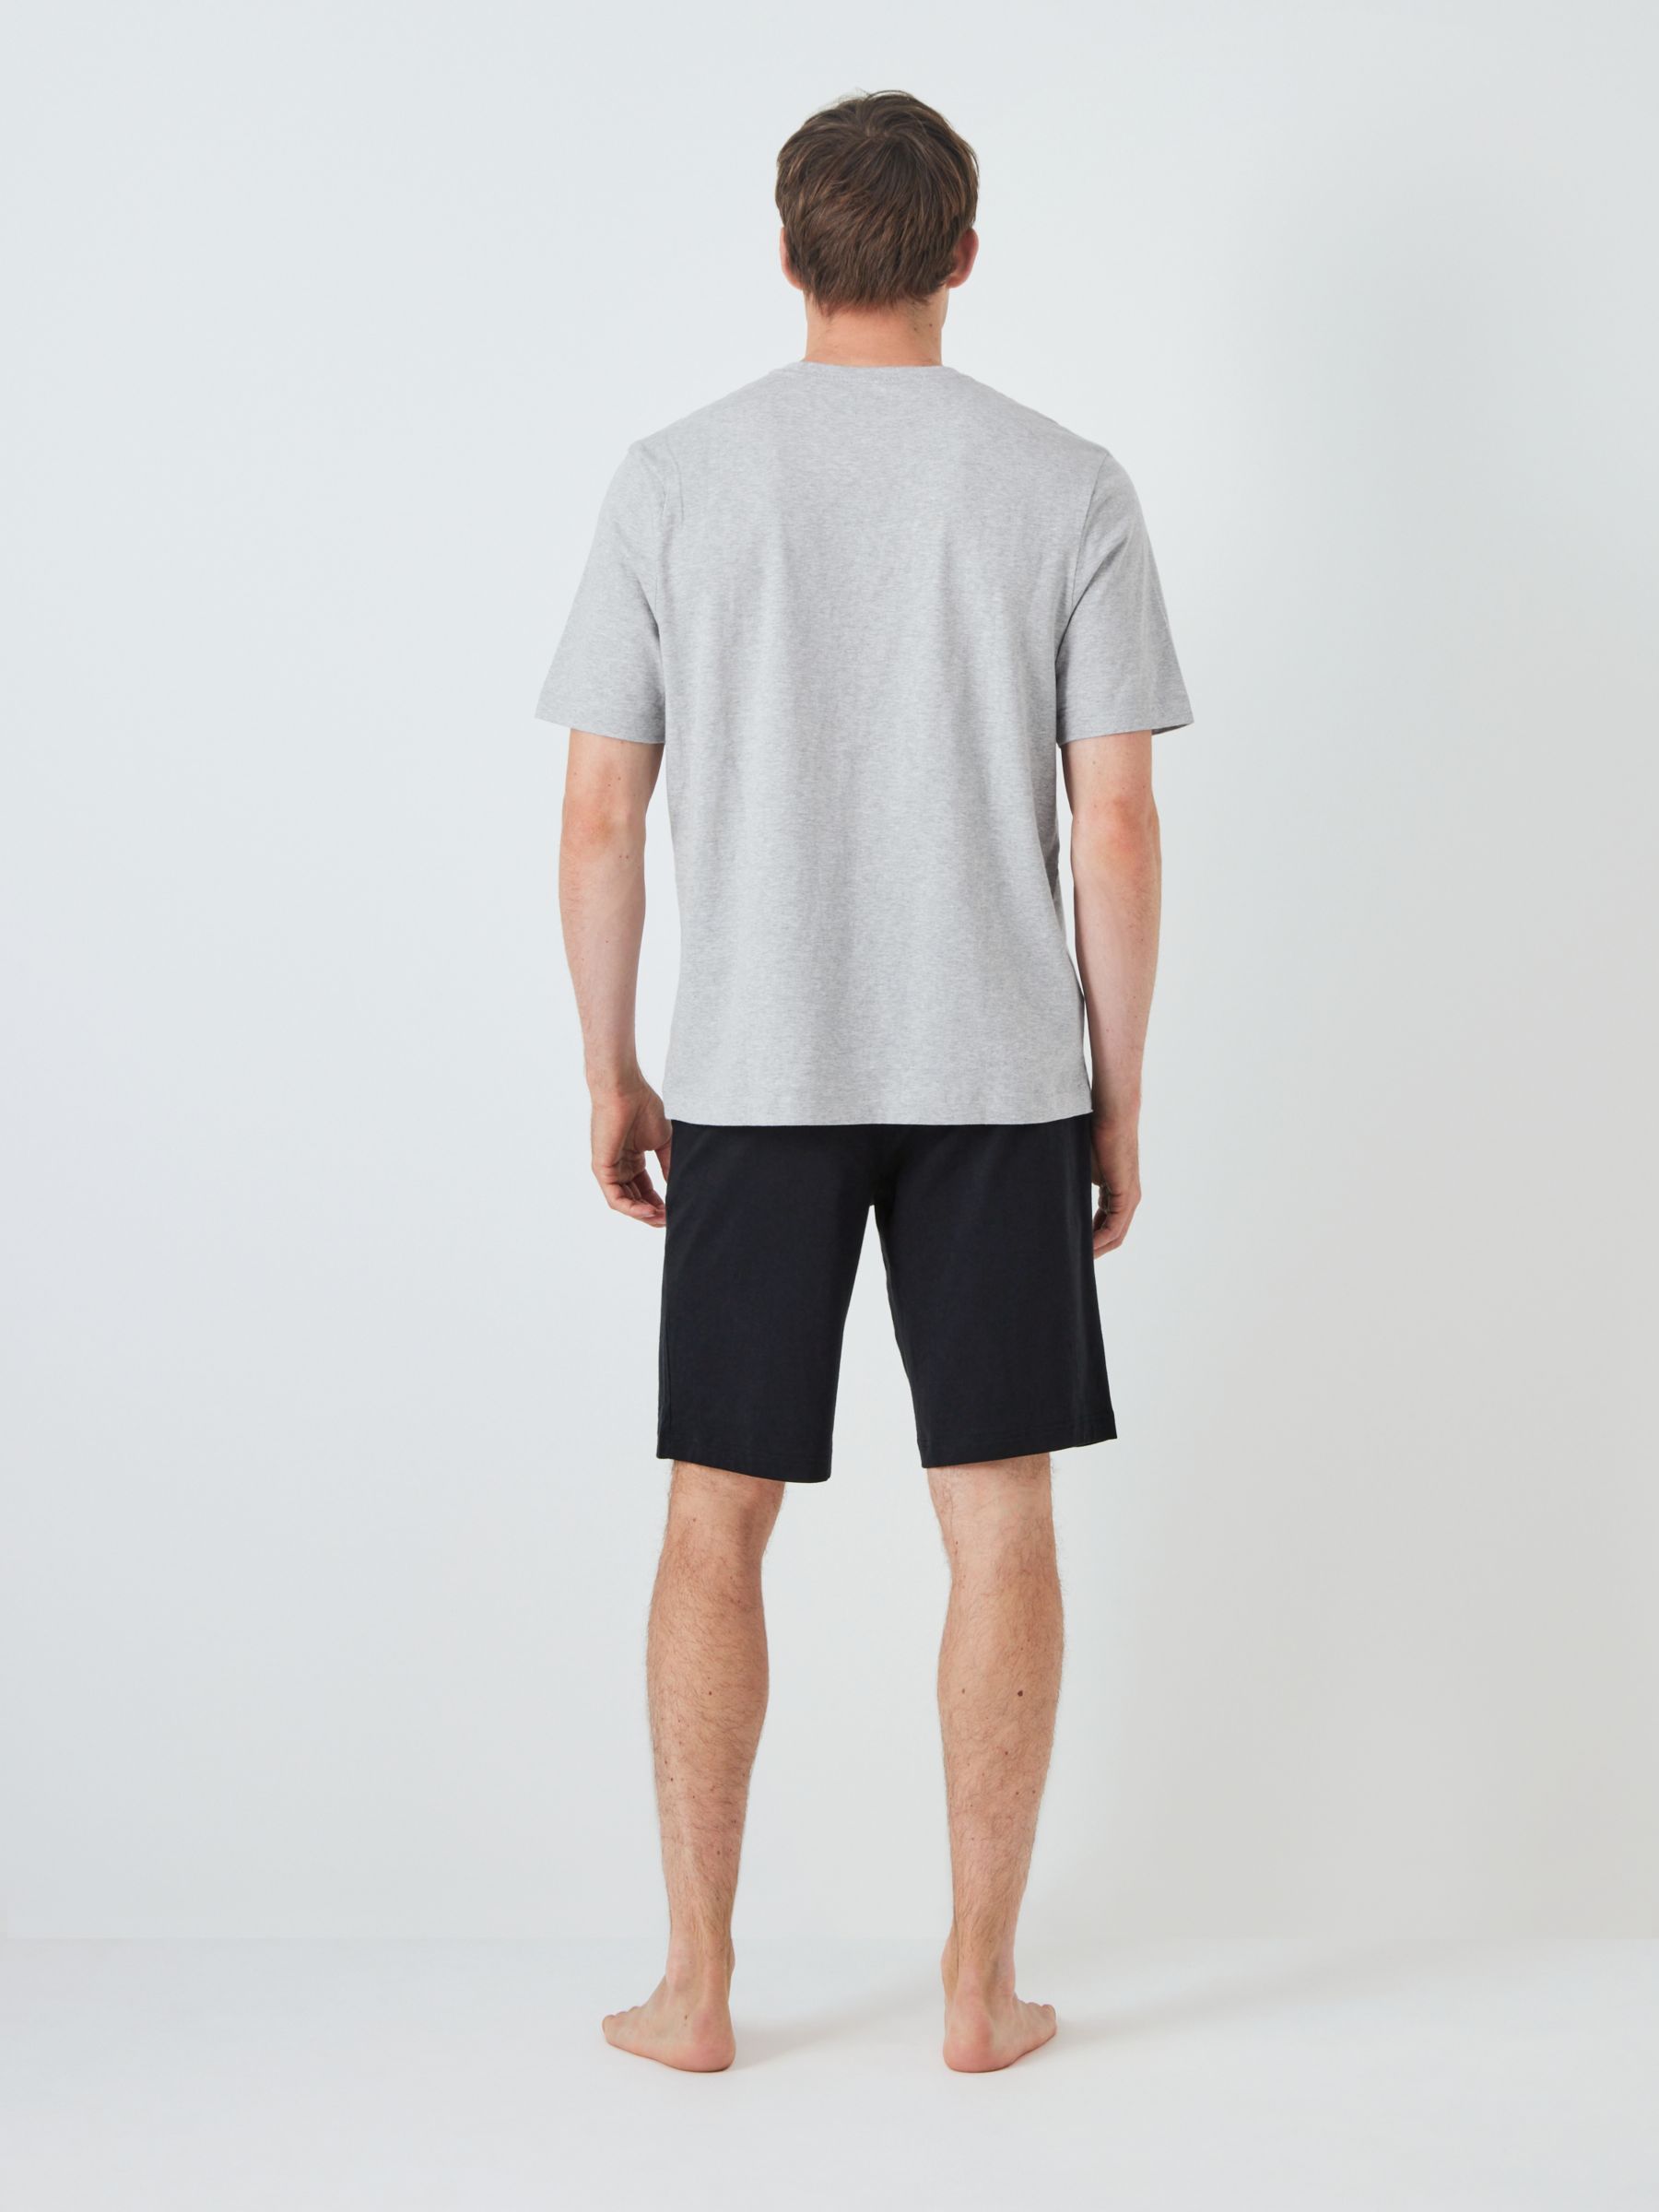 Buy John Lewis ANYDAY Cotton Jersey T-Shirt & Shorts Pyjama Set, Black/Grey Online at johnlewis.com